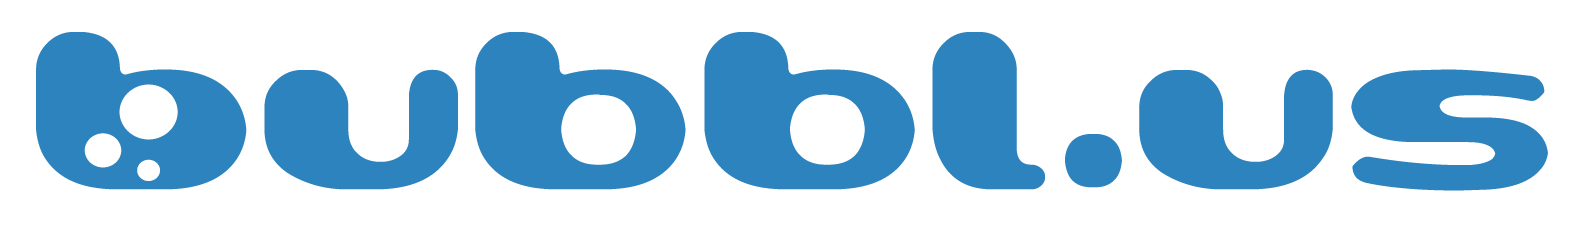 Bubbl.us Logo - Press kit.us Help